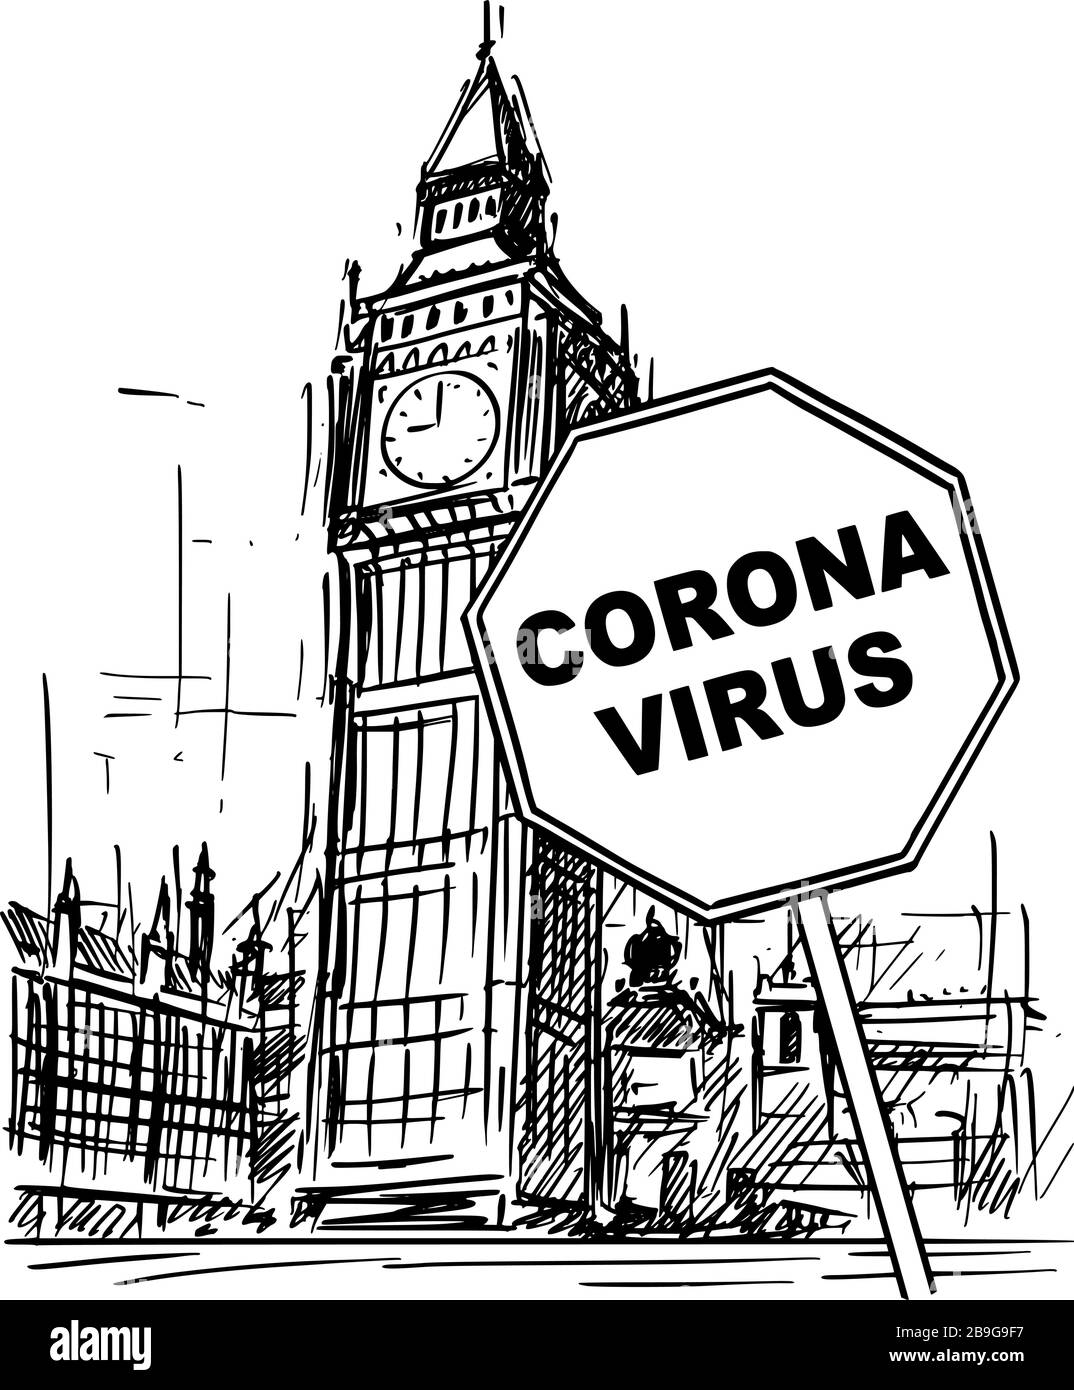 Vektor-Cartoon skizziert grobe Illustration von Großbritannien, London, Big Ben Uhrturm und Coronavirus Kovid-19 Virus-Epidemie-Warnzeichen. Stock Vektor